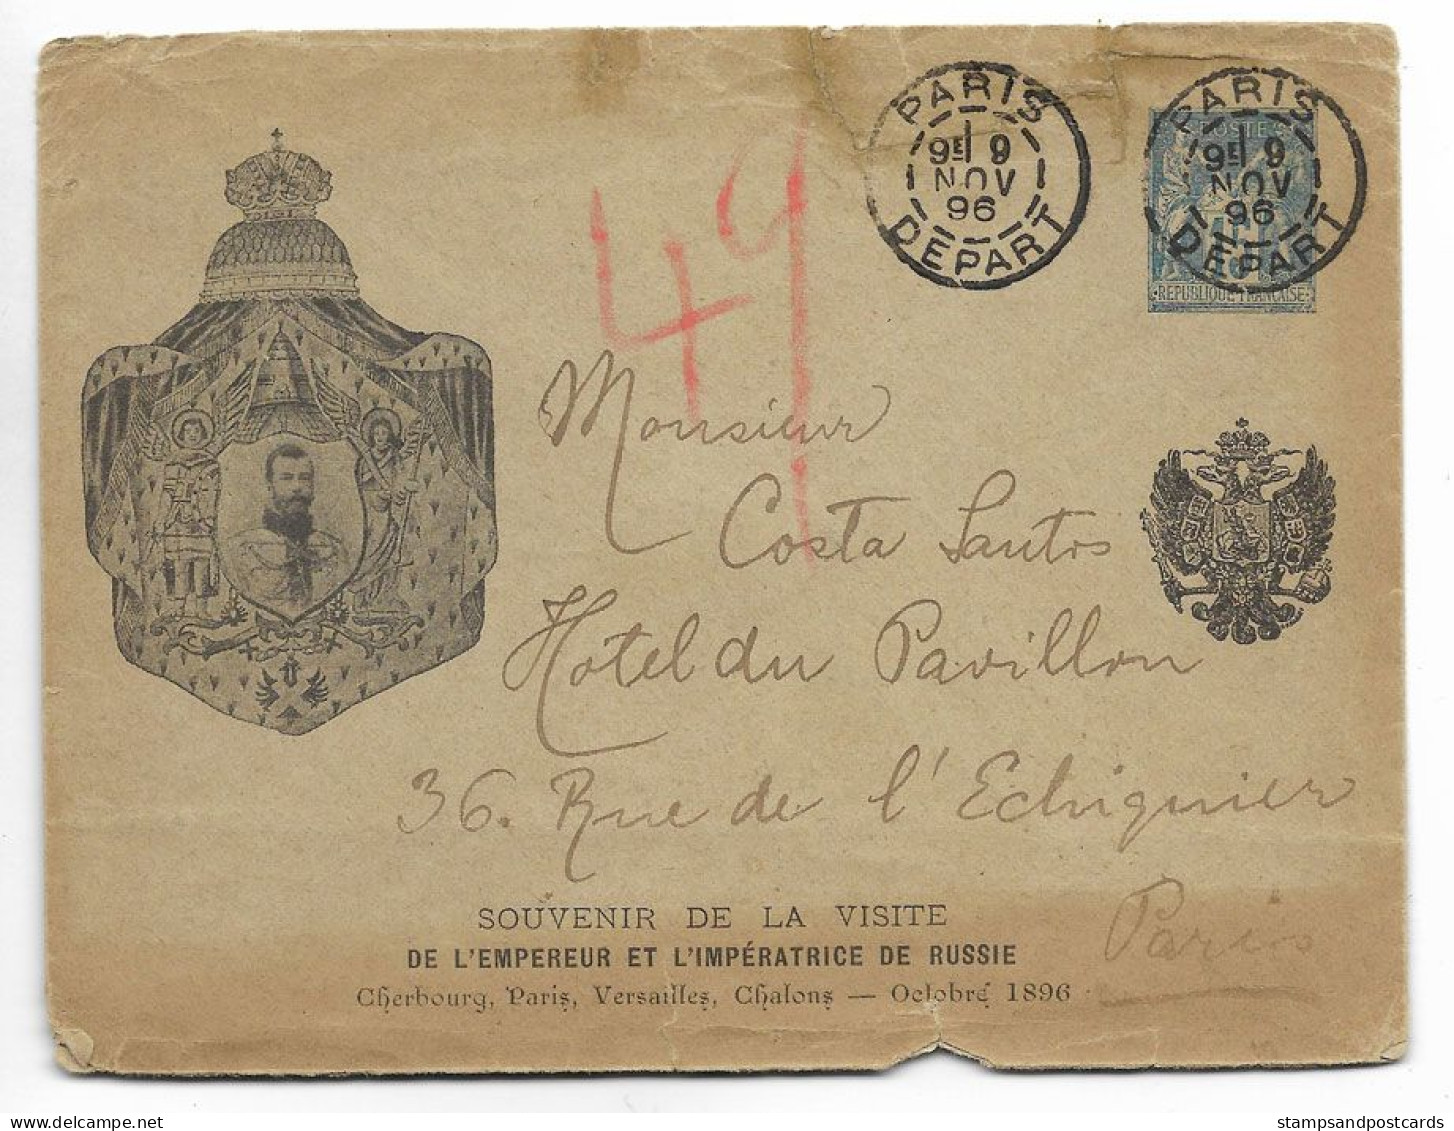 France Souvenir Visite Empereur Russie 1896 Rare Carte Entier Repiqué Voyagé Russia Czar Visit France Stationery Cover - Letter Cards